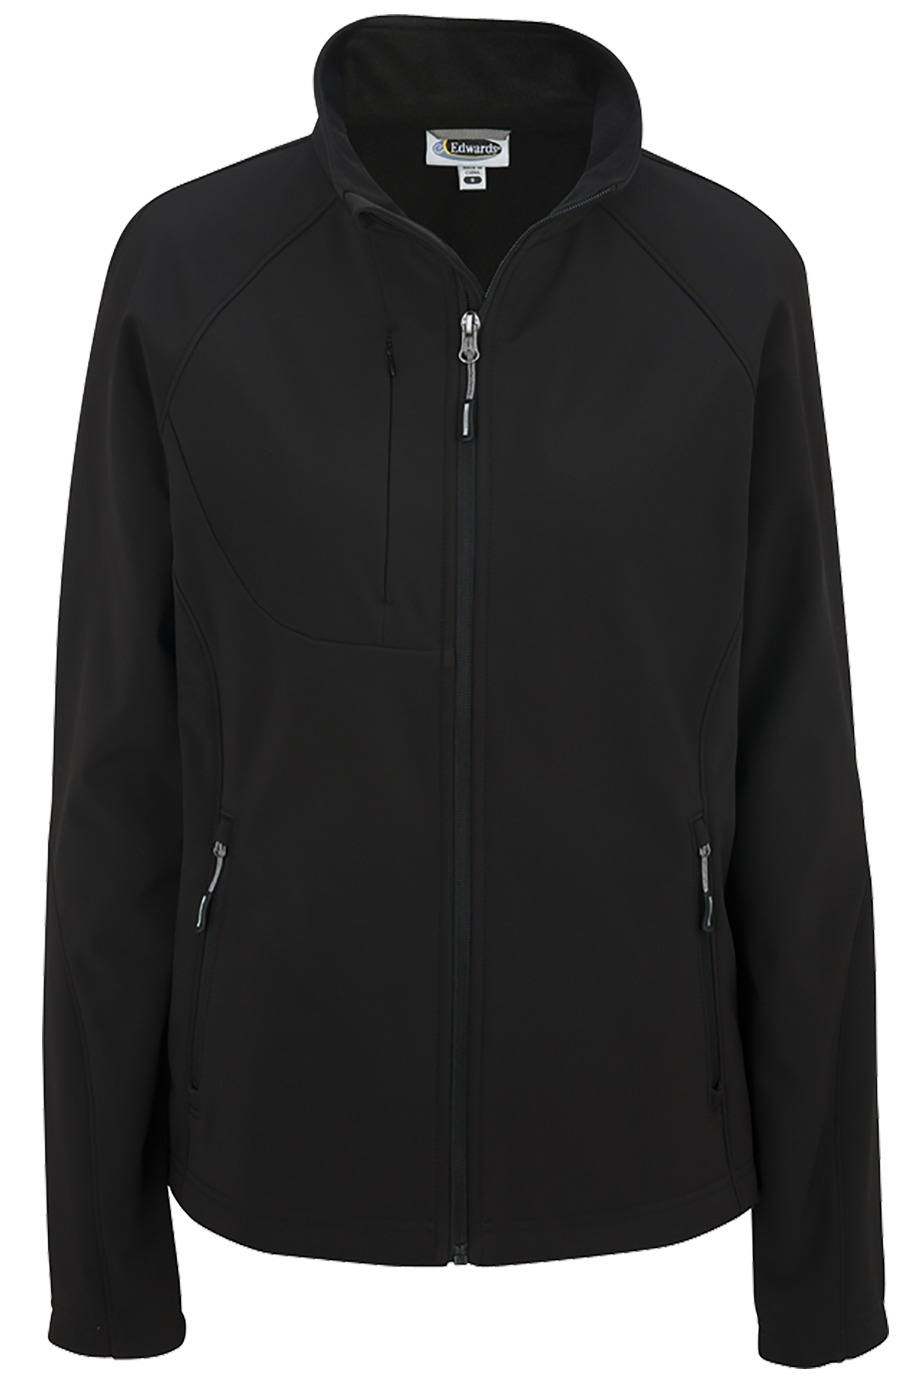 Edwards Garment 6420 - Ladies' Soft Shell Jacket